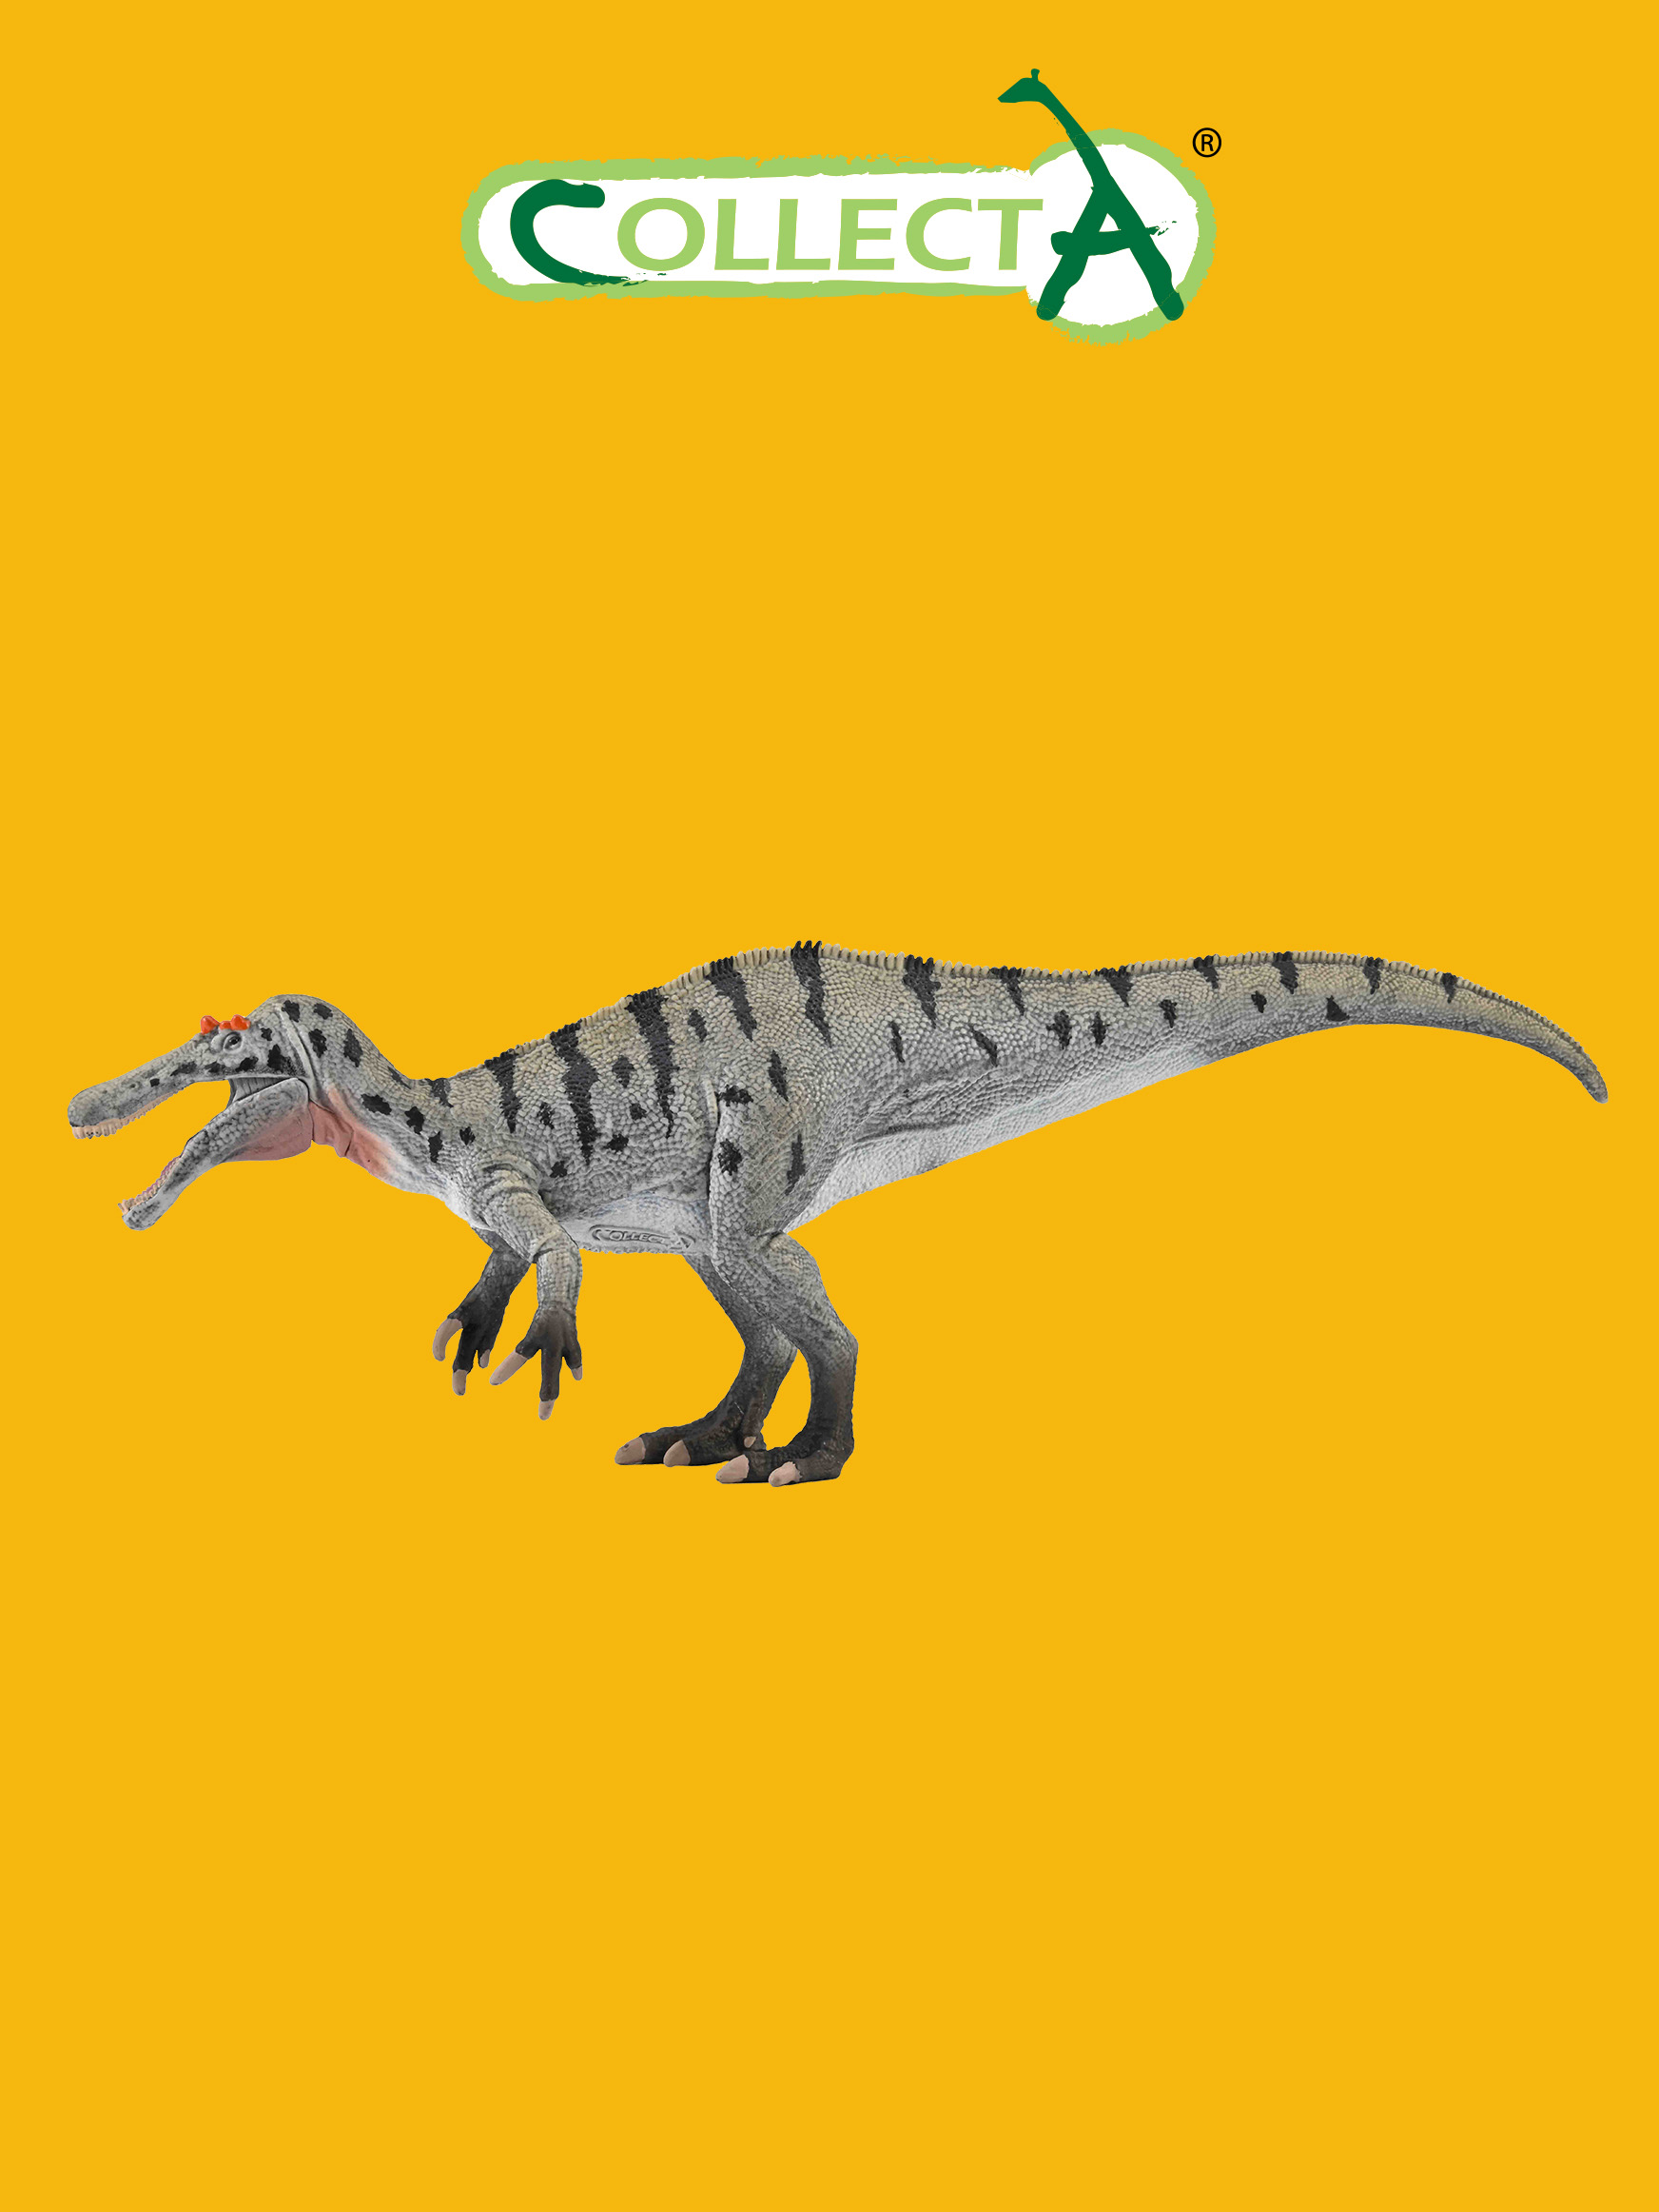 Фигурка Collecta динозавра Цератозухопсов подвижной челюстью фигурка collecta динозавр тиранозавр с подвижной челюстью 1 40